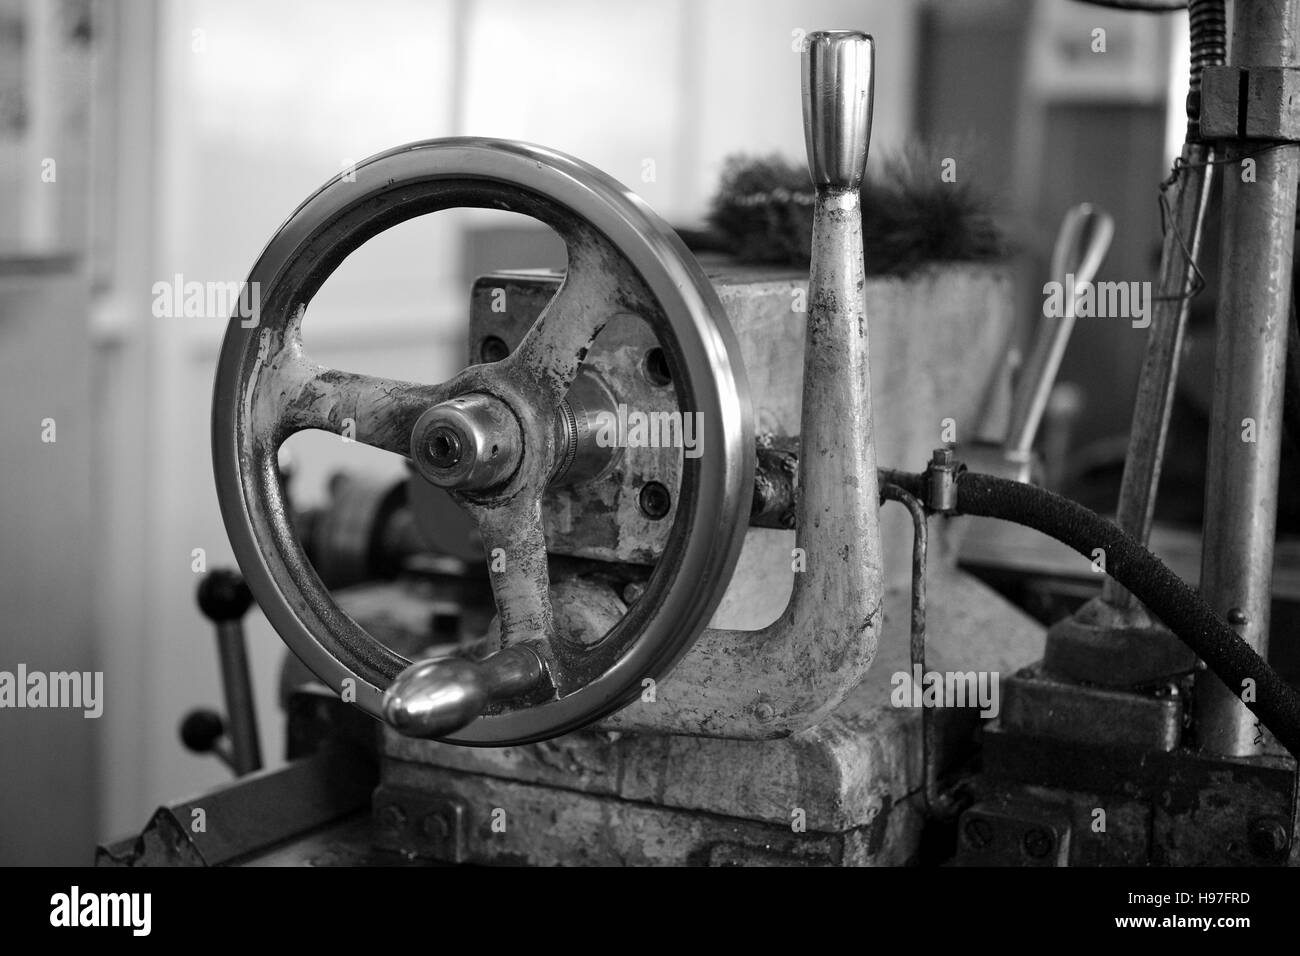 Wheel of lathe. Black and white image Stock Photo